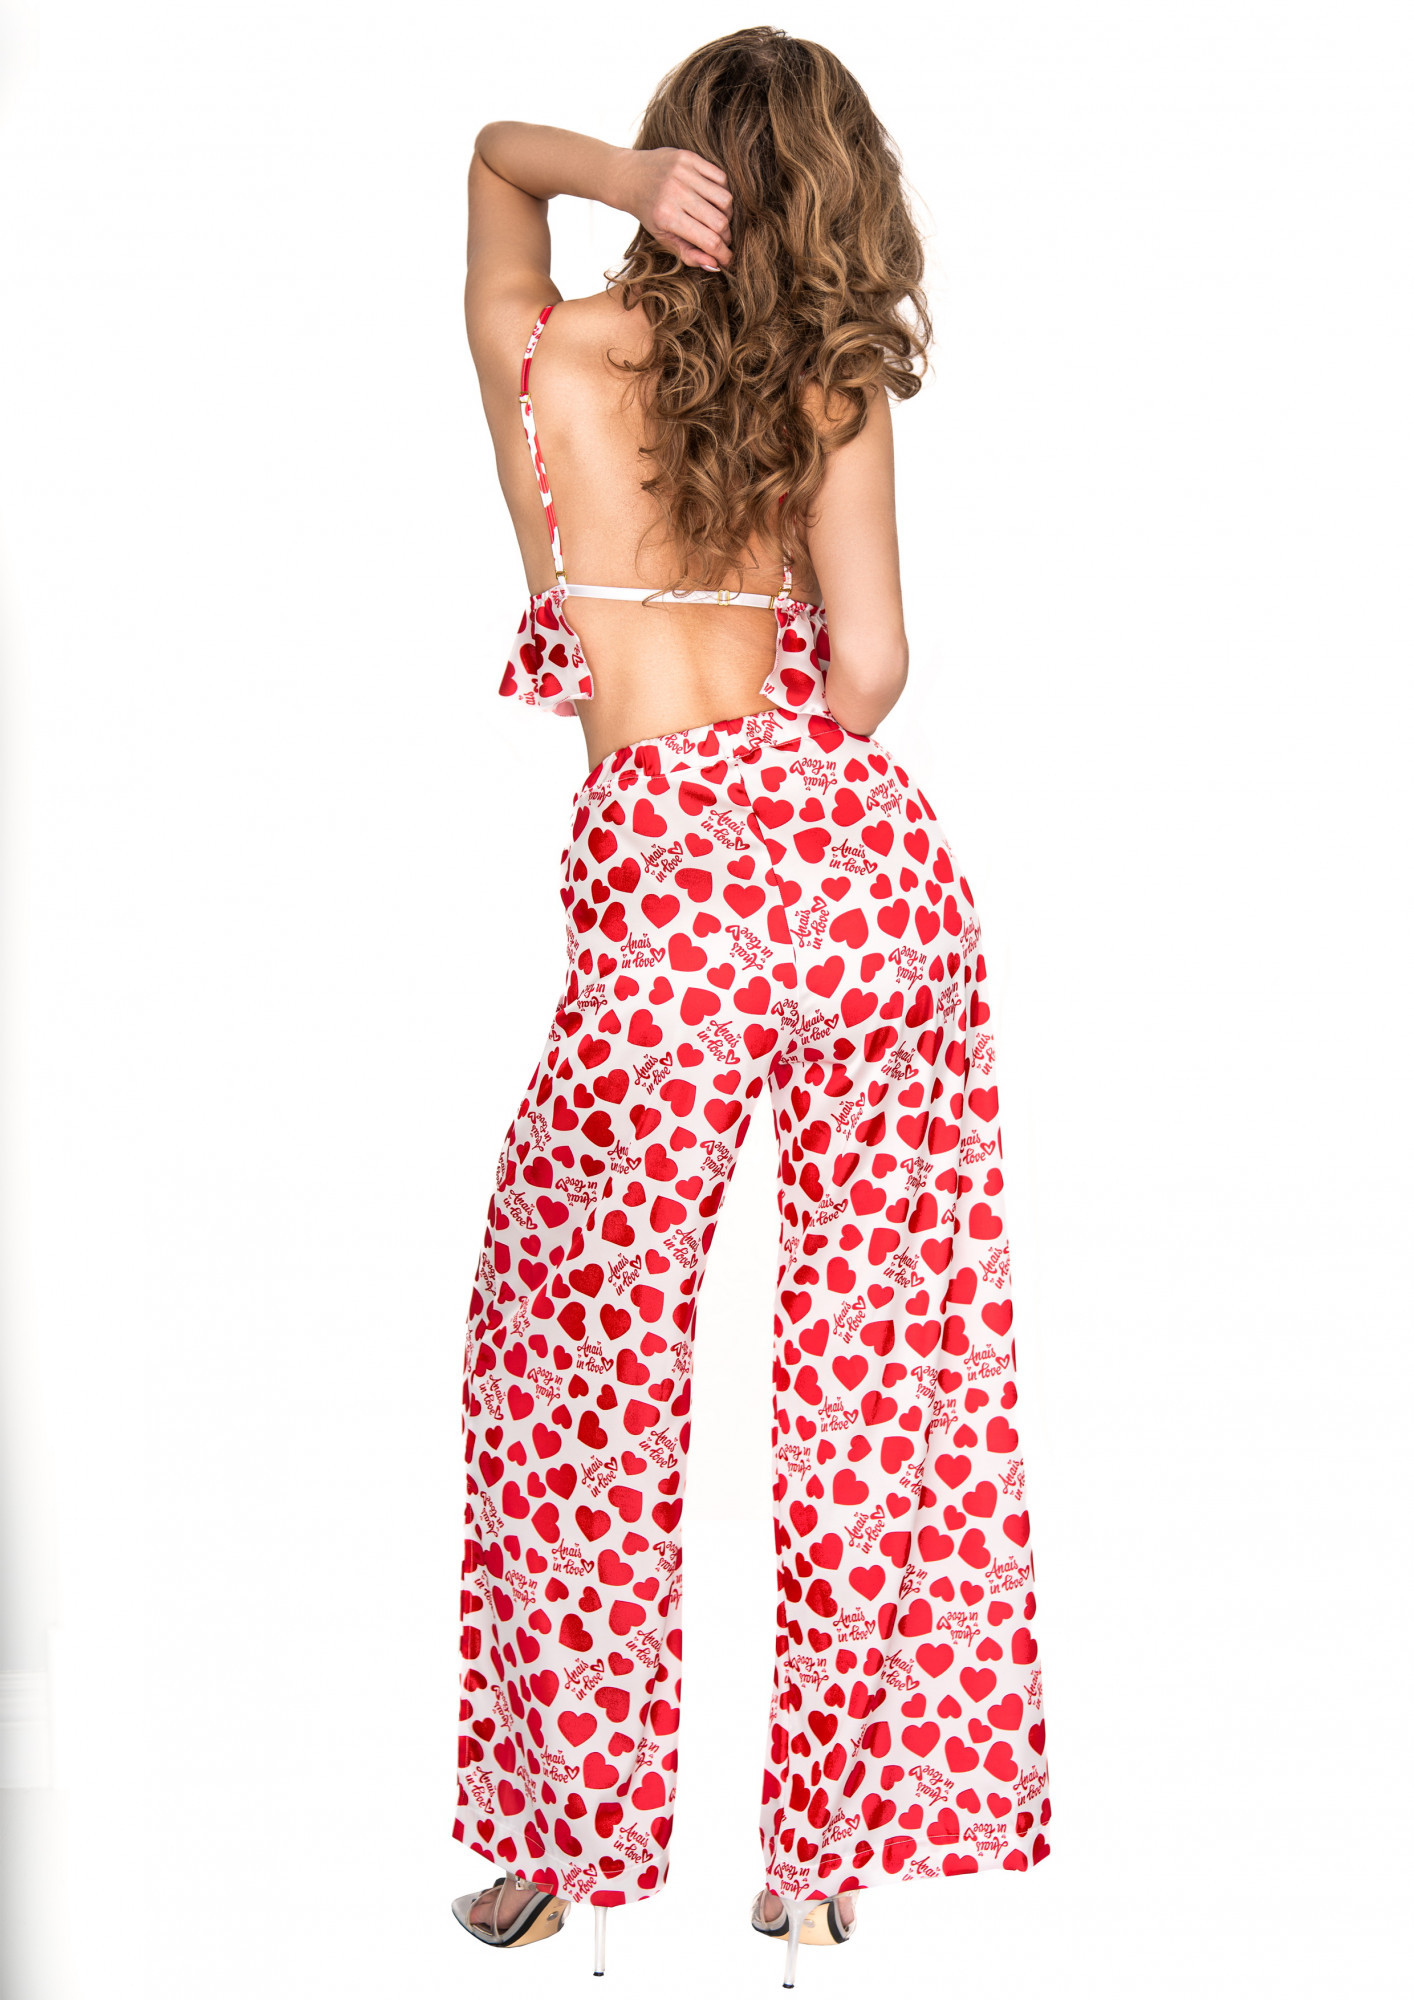 Krásný komplet Inezza Bra + Pants - Anais bílá/červená L/XL